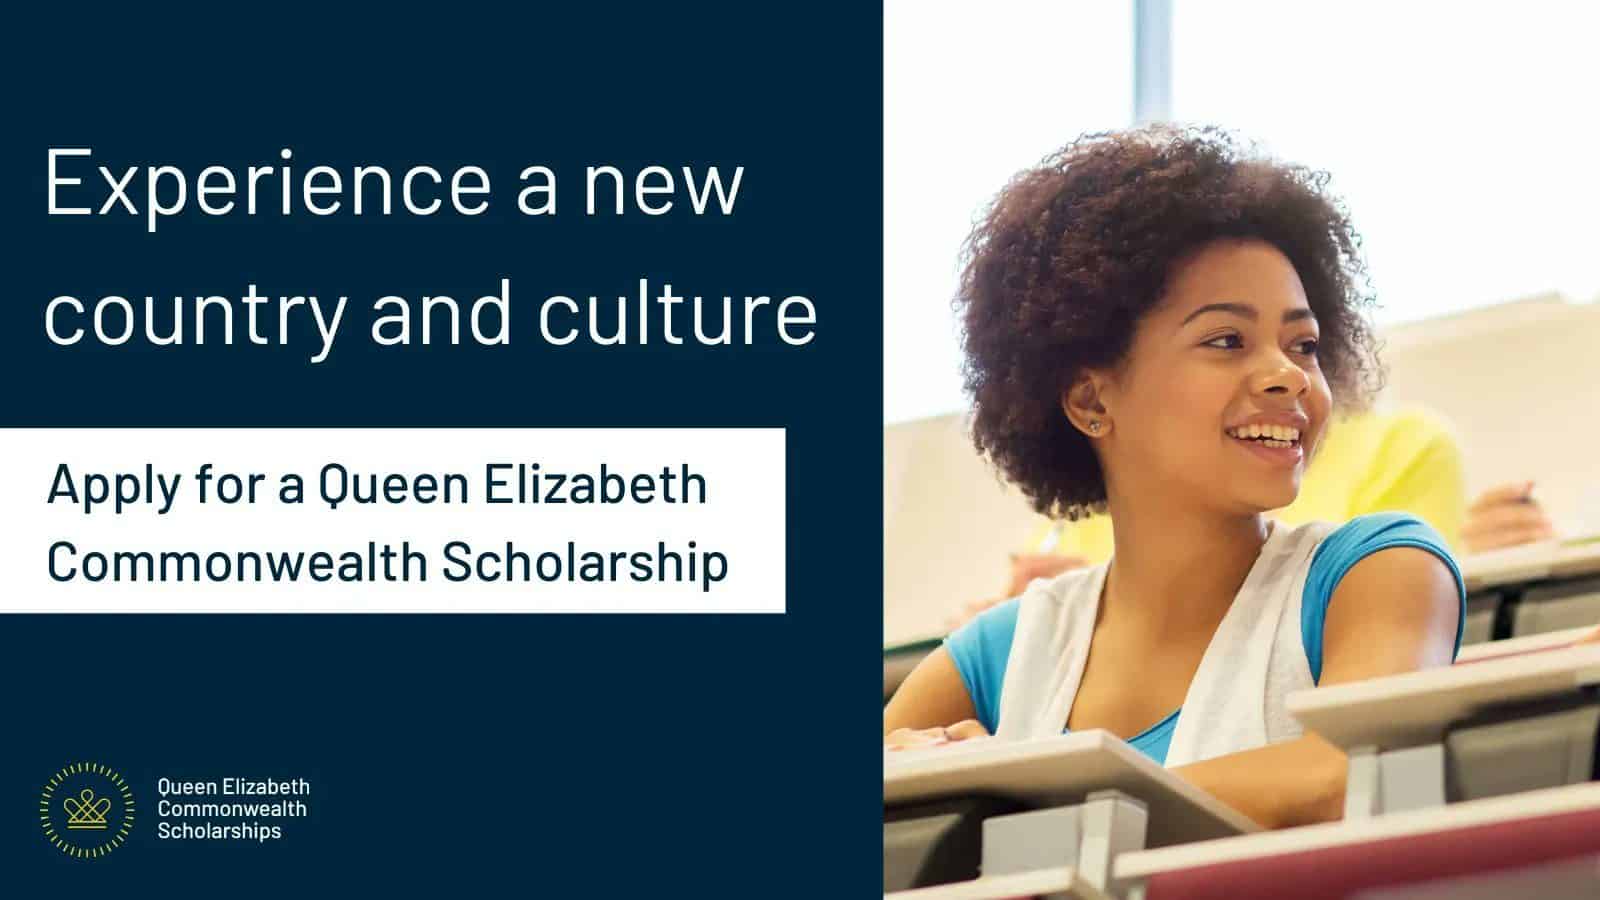 Queen Elizabeth Commonwealth Scholarships (QECS)